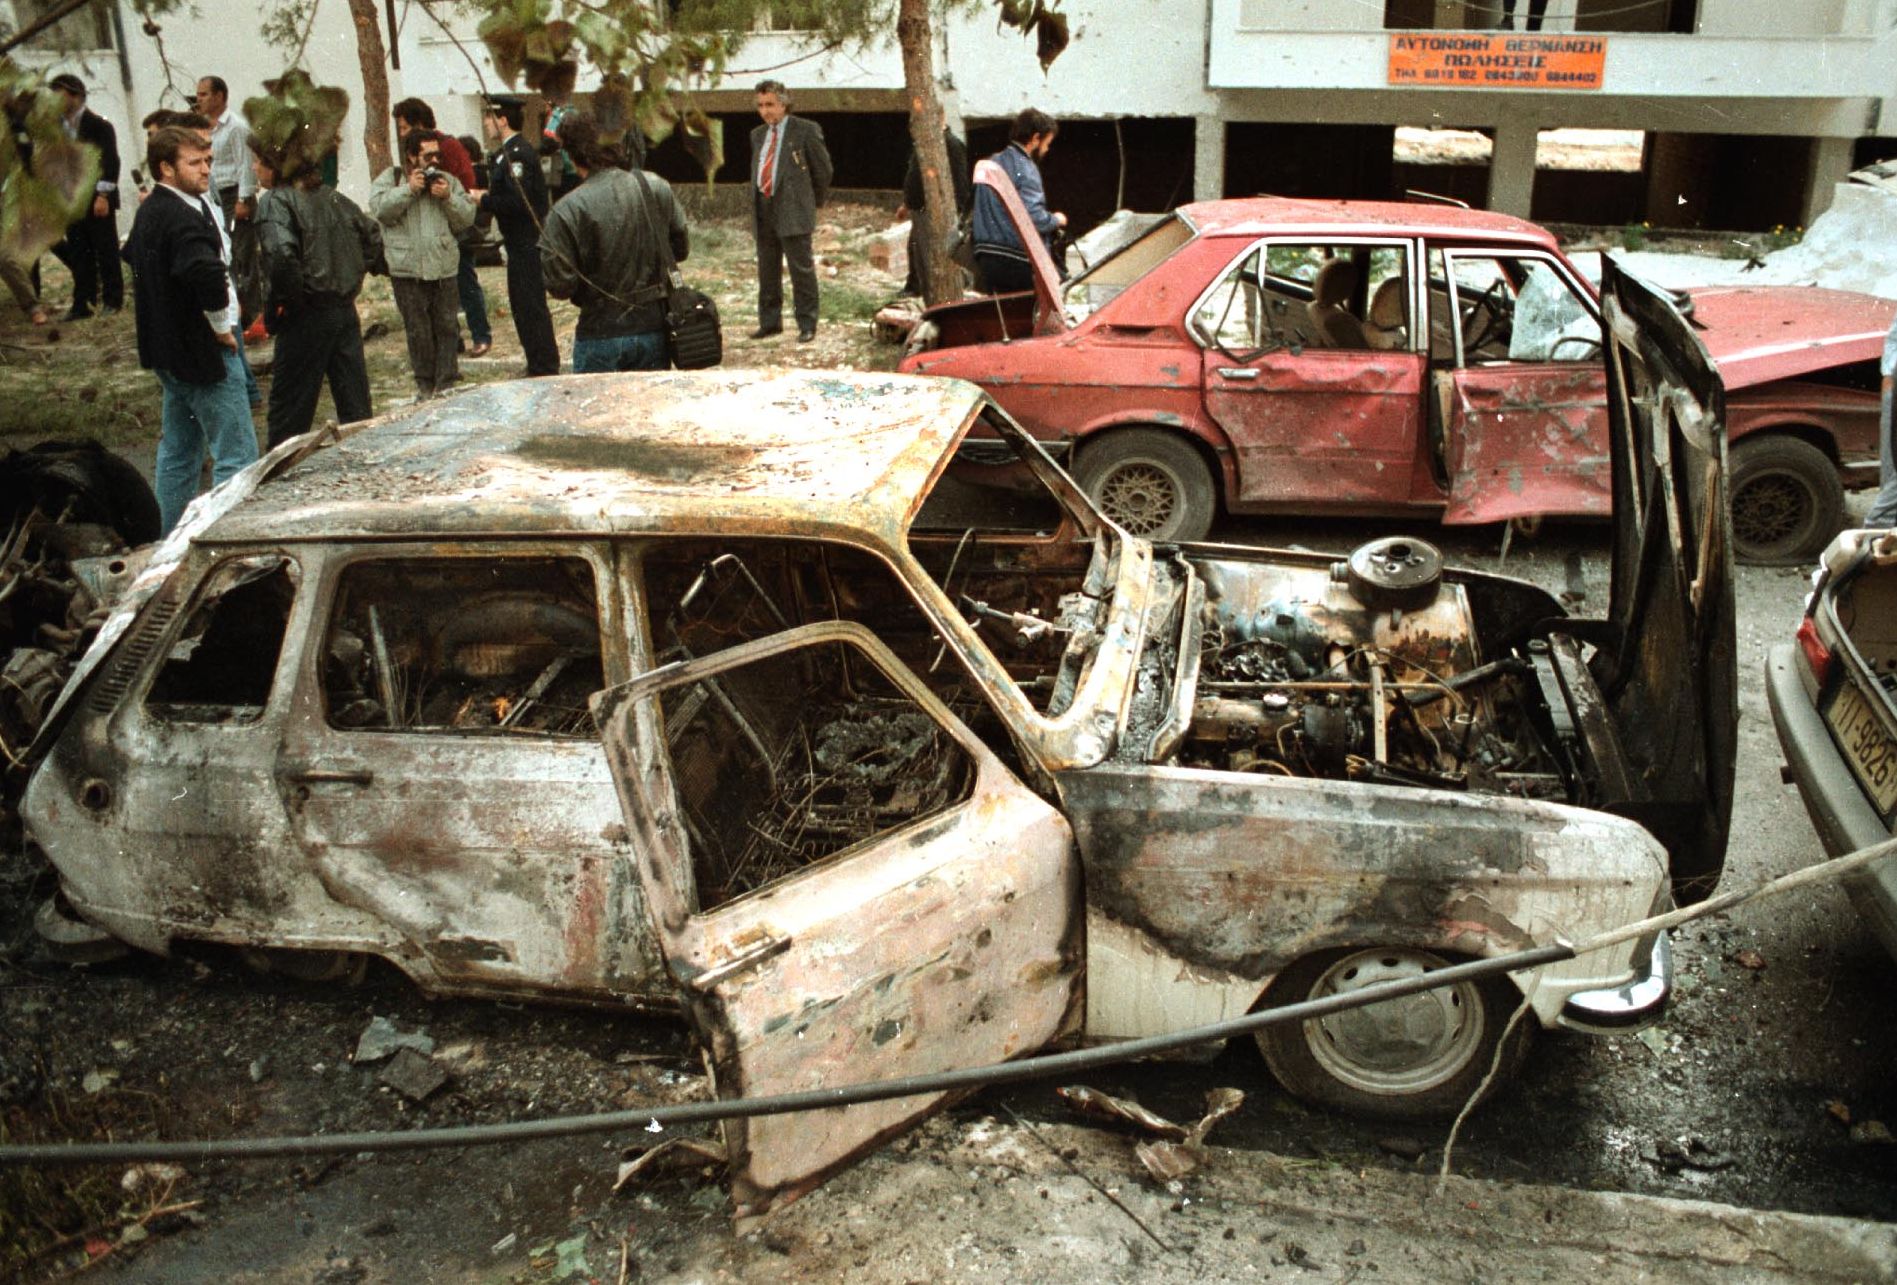 8 Μαΐου 1989. Τα αποτελέσματα απο την έκρηξη οχήματος που παγίδευση η 17 Νοέμβρη όταν αποπειράθηκε να  δολοφονήσει τον πρώην υπουργό Γιώργο Πέτσο.